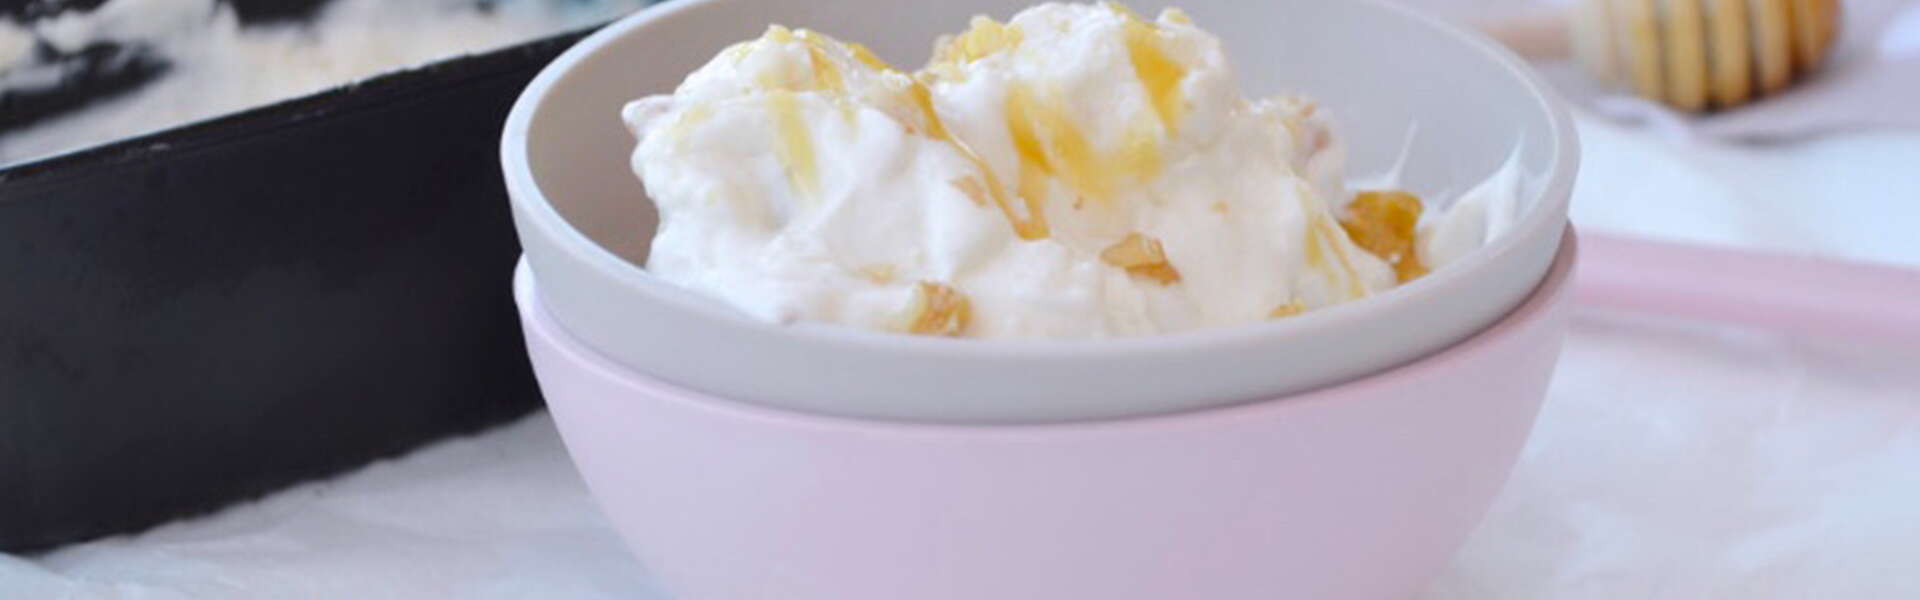 Frozen Yogurt miele e noci: la ricetta passo passo per farlo in casa senza gelatiera